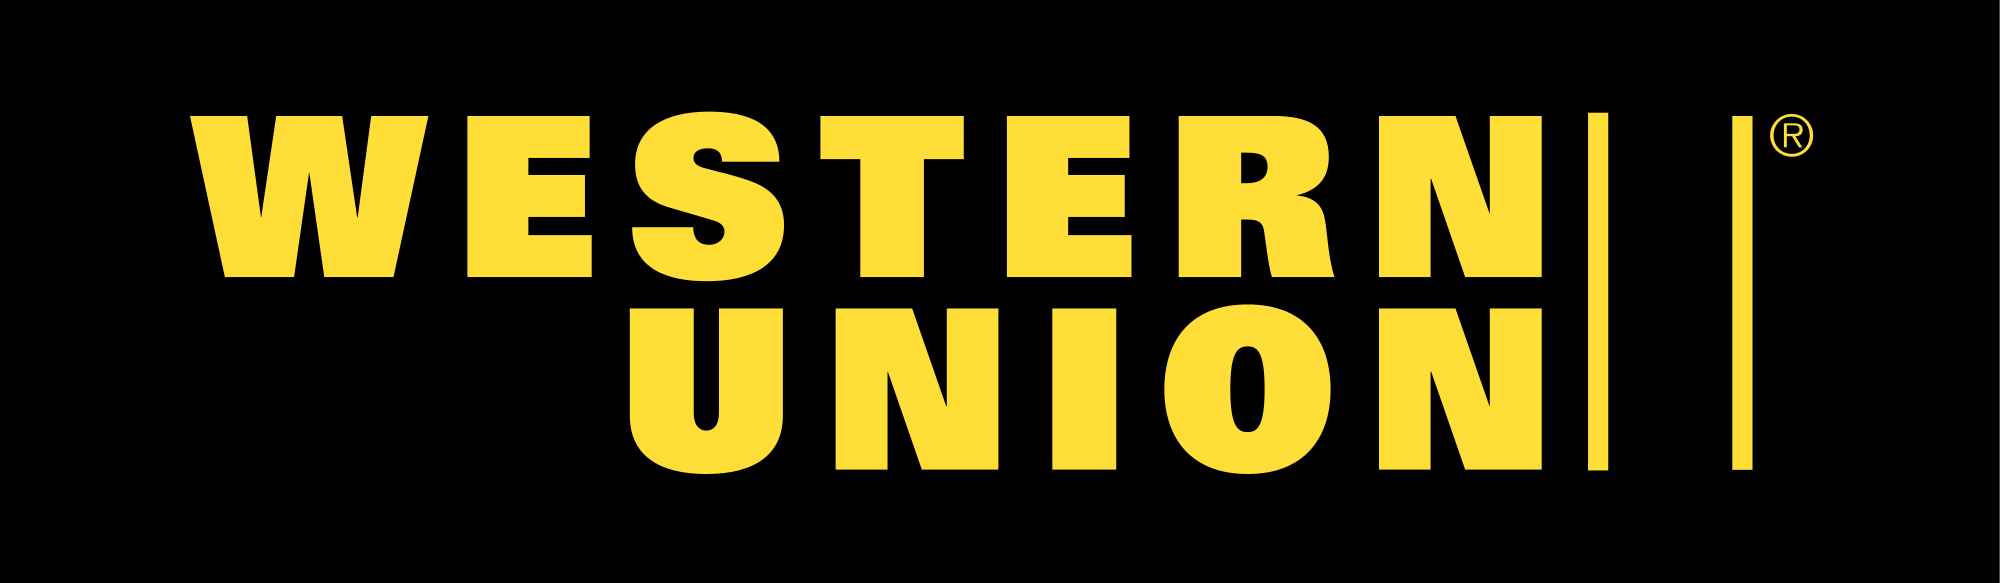 . PlusPng.com Western Union l